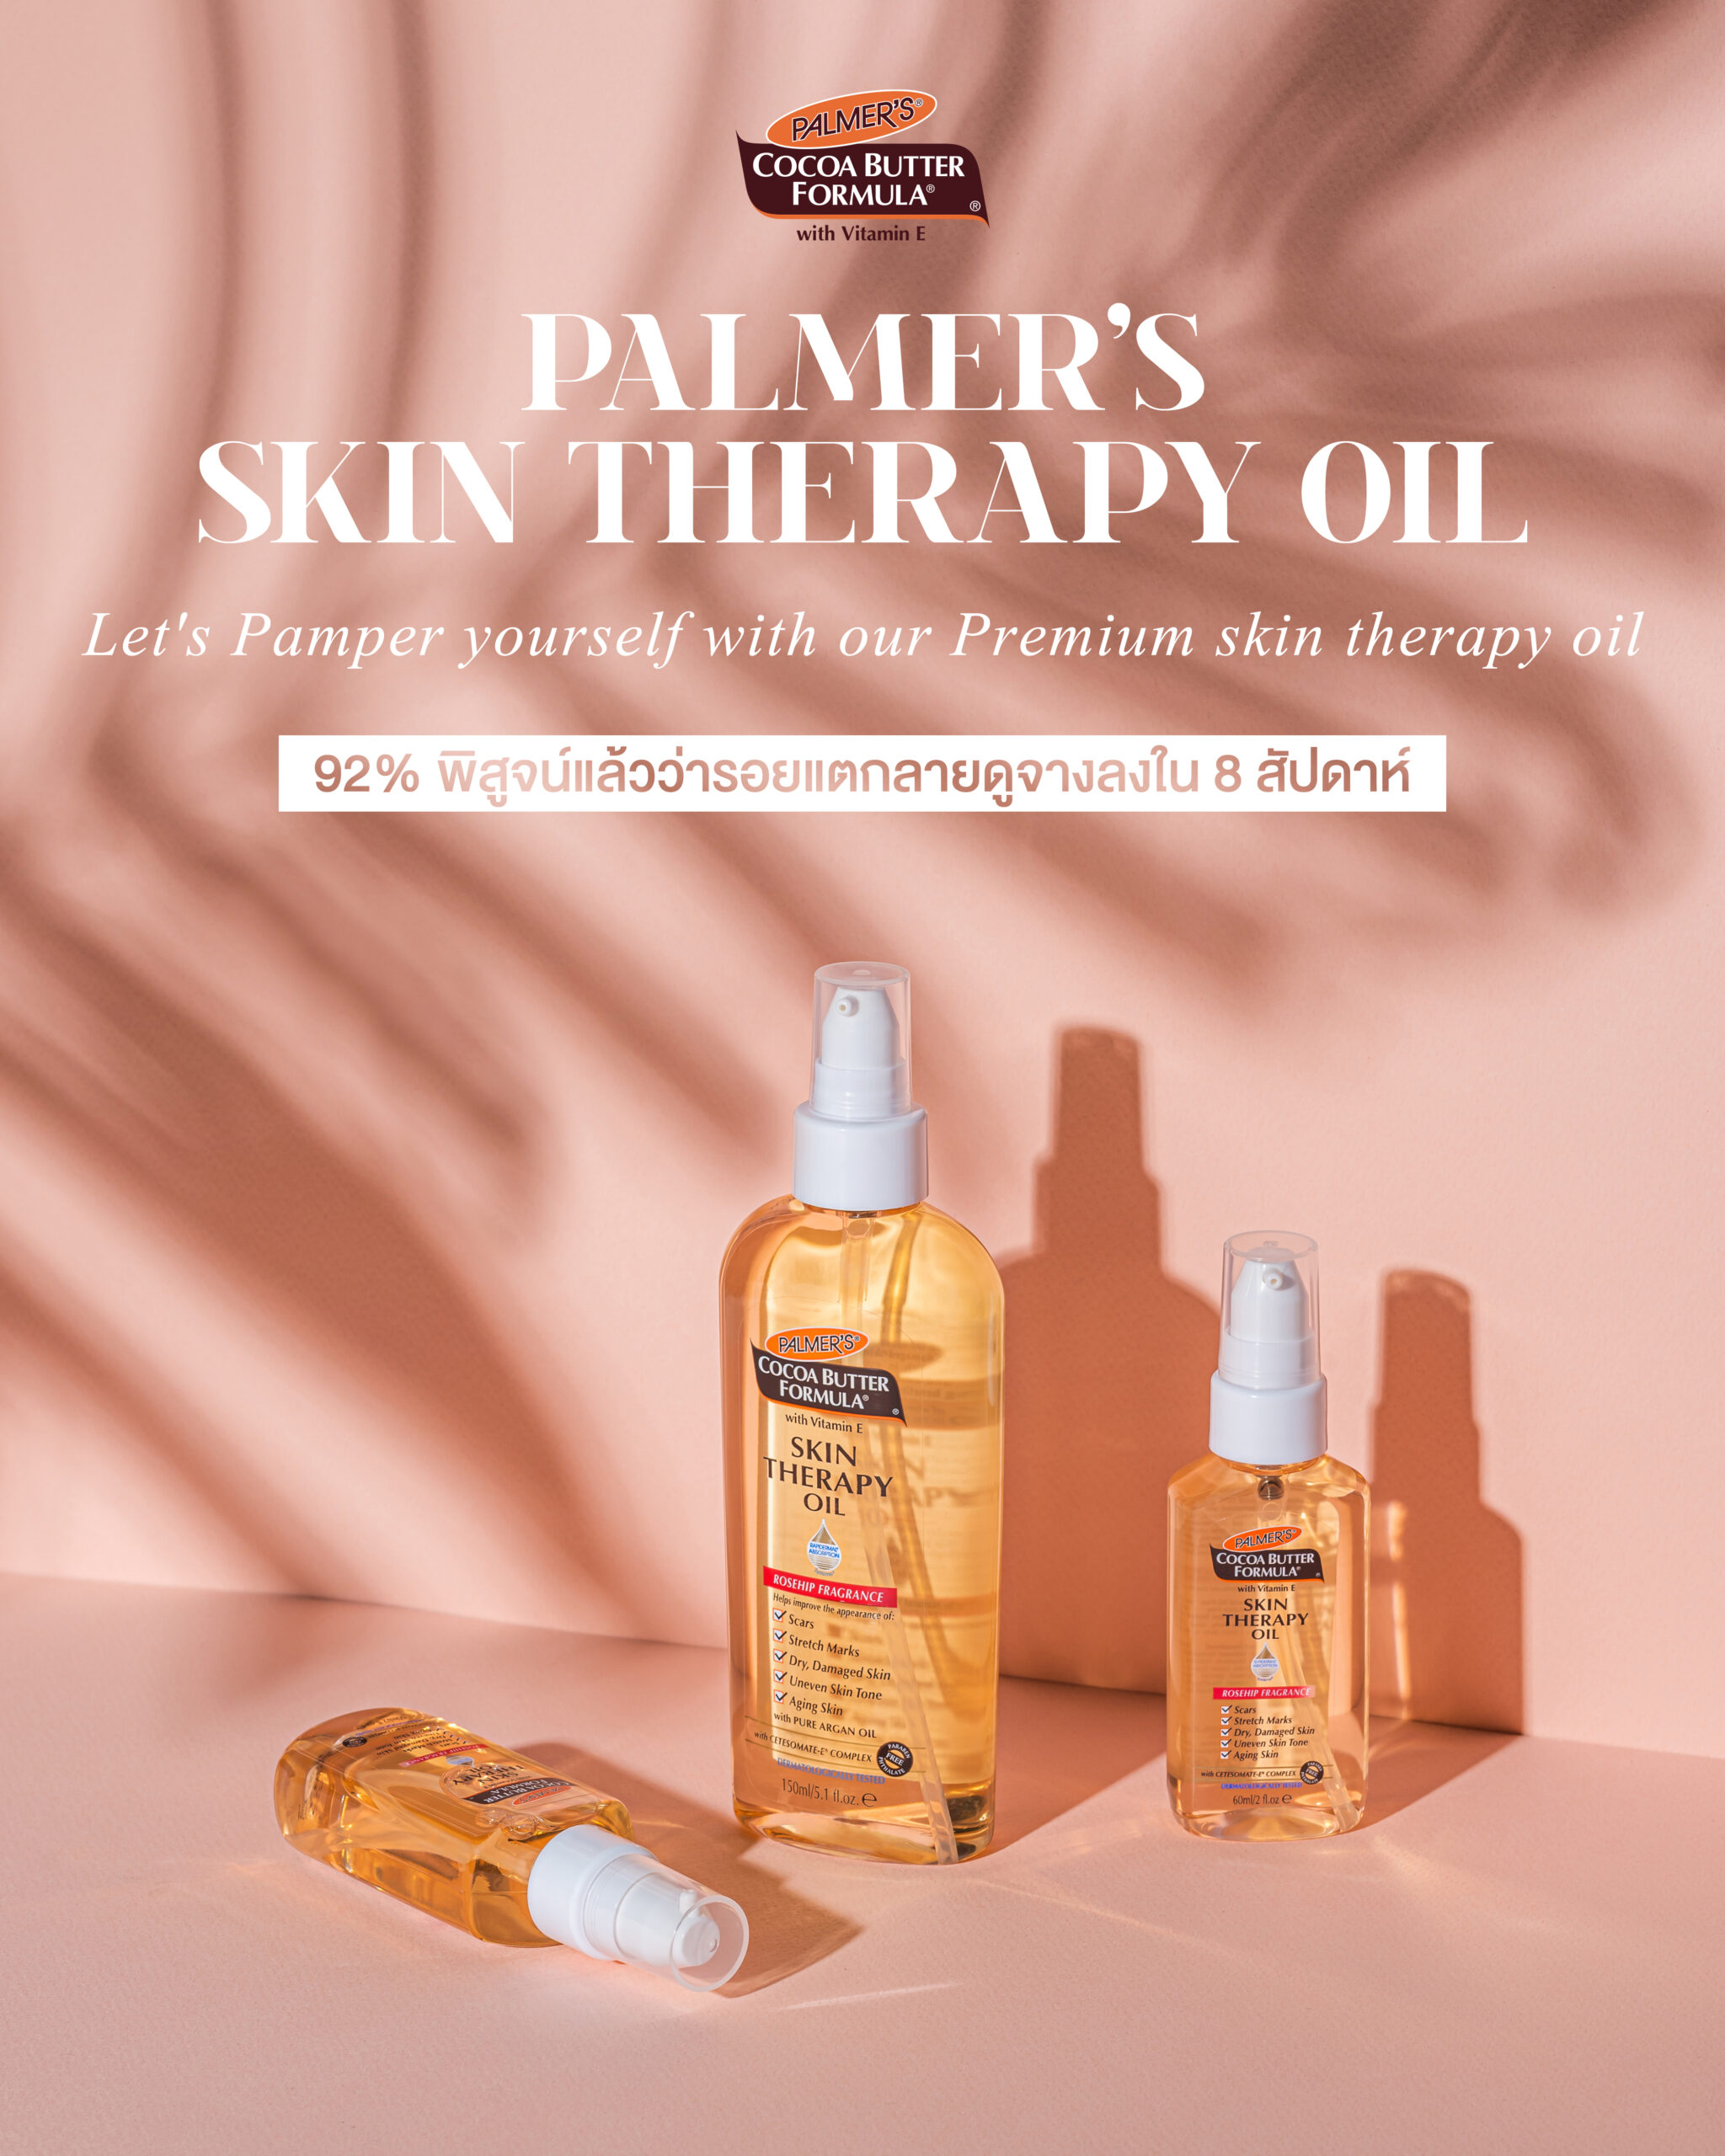 Skin Therapy Oil 150ml รีวิว,ออยล์สำหรับคนท้อง,palmer's skin therapy oil ซื้อที่ไหน,Palmer's รีวิว,Palmer's Skin Therapy Oil ดีไหม